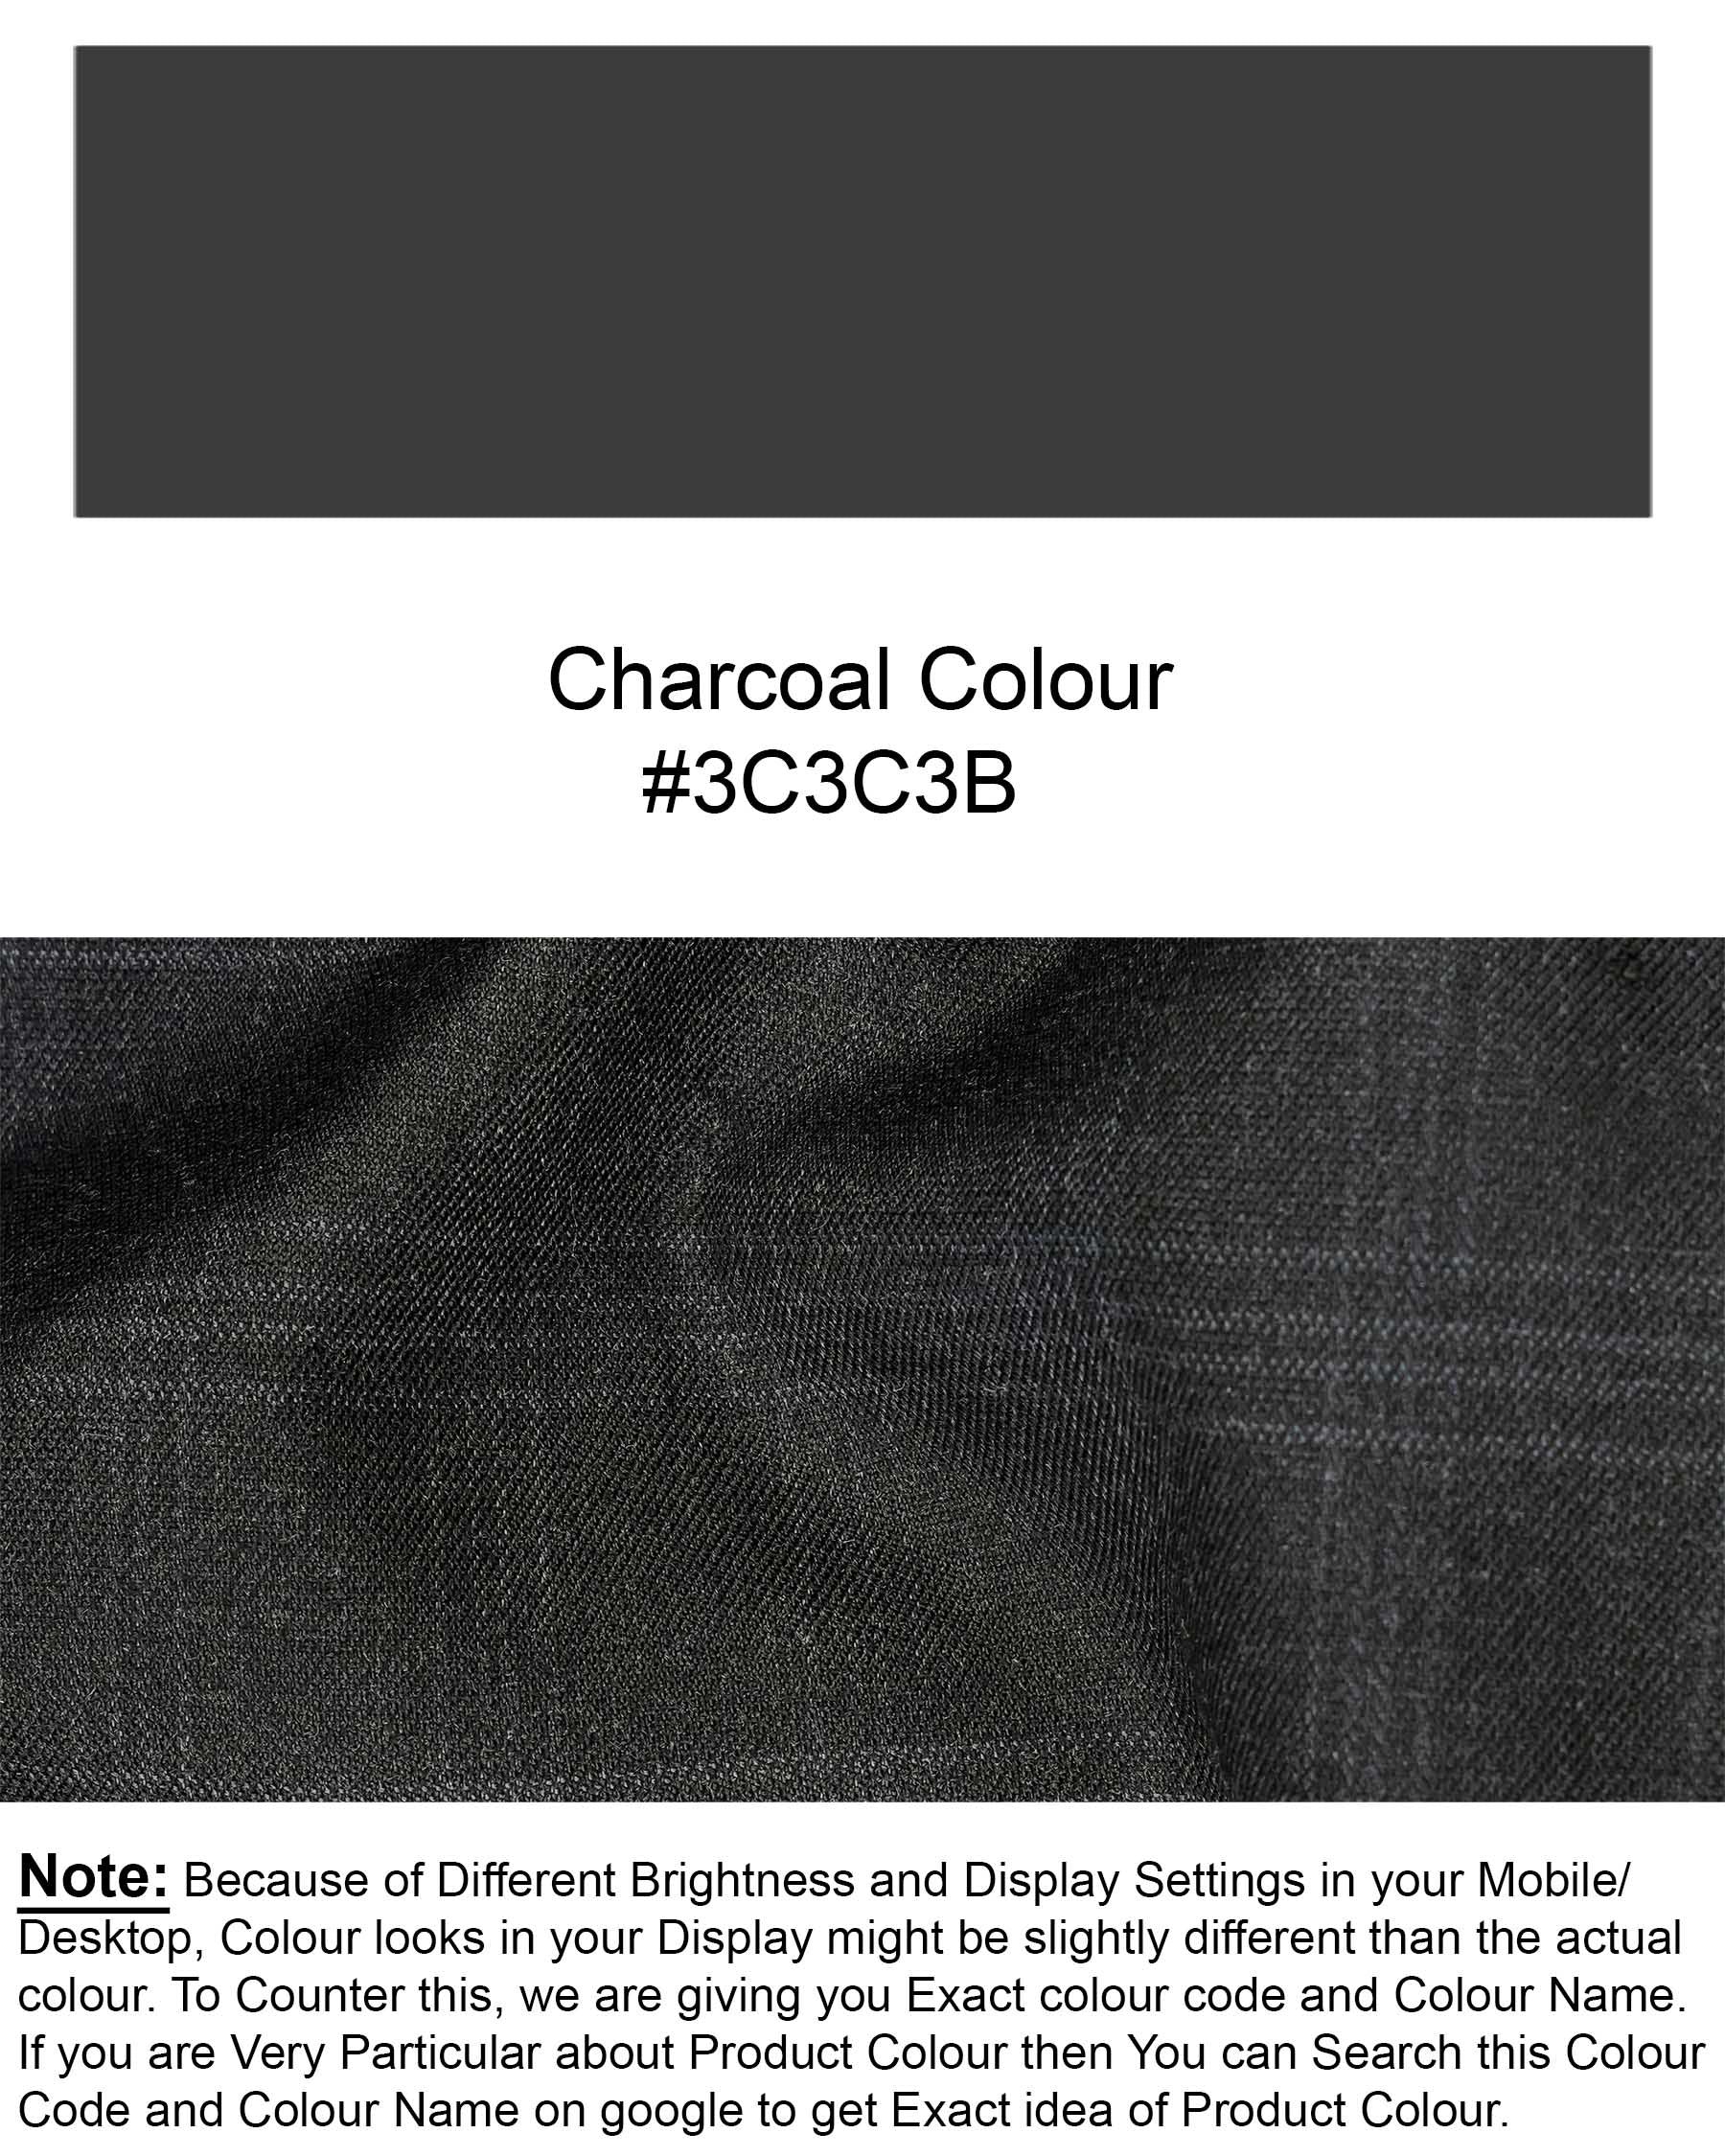 Charcoal Gray Plaid Pant T1947-28, T1947-30, T1947-32, T1947-34, T1947-36, T1947-38, T1947-40, T1947-42, T1947-44